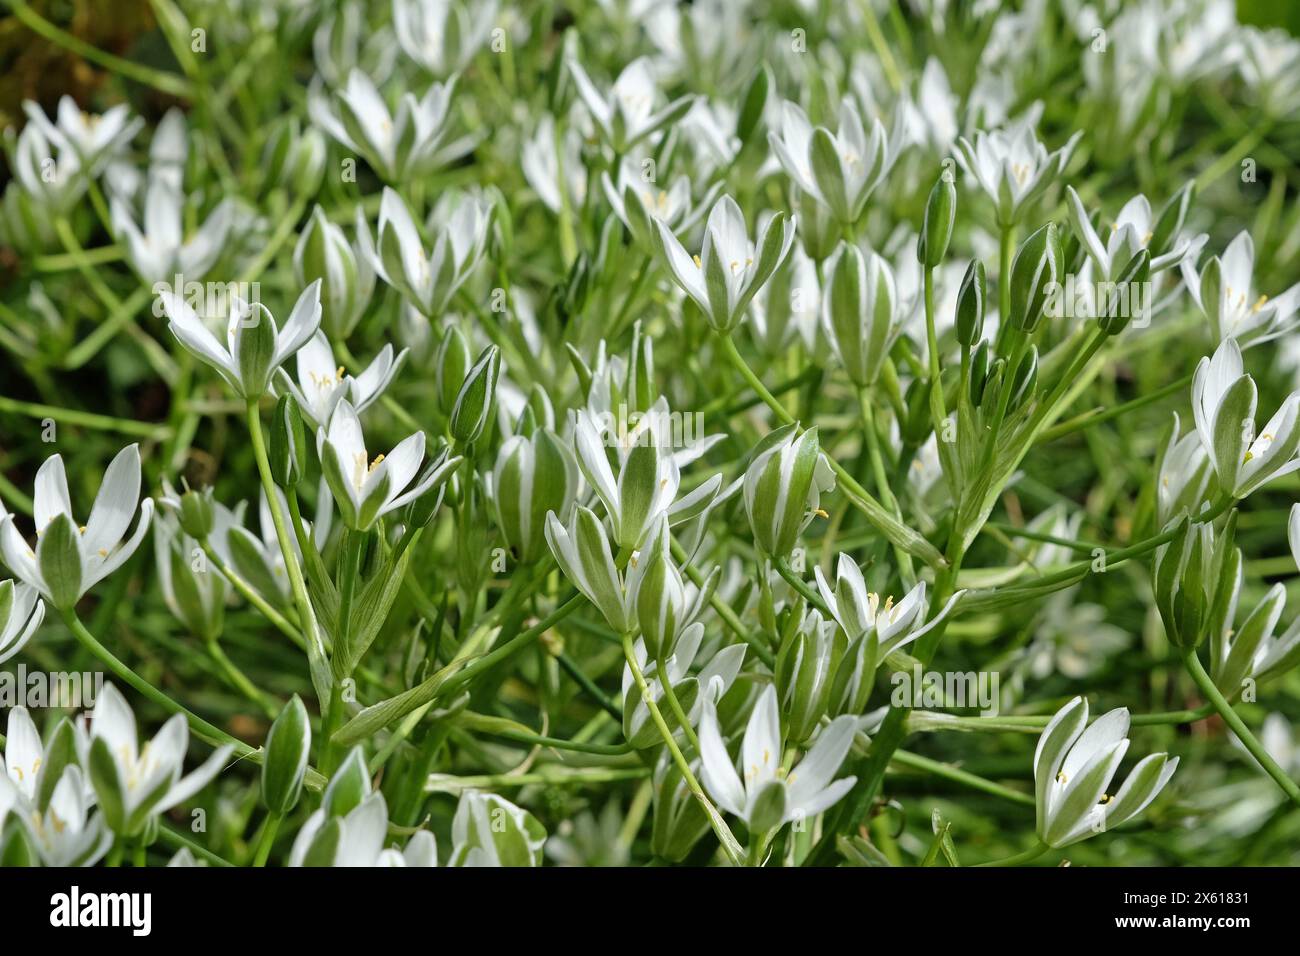 White Ornithogalum umbellatum, Common Star of Bethlehem in flower. Stock Photo